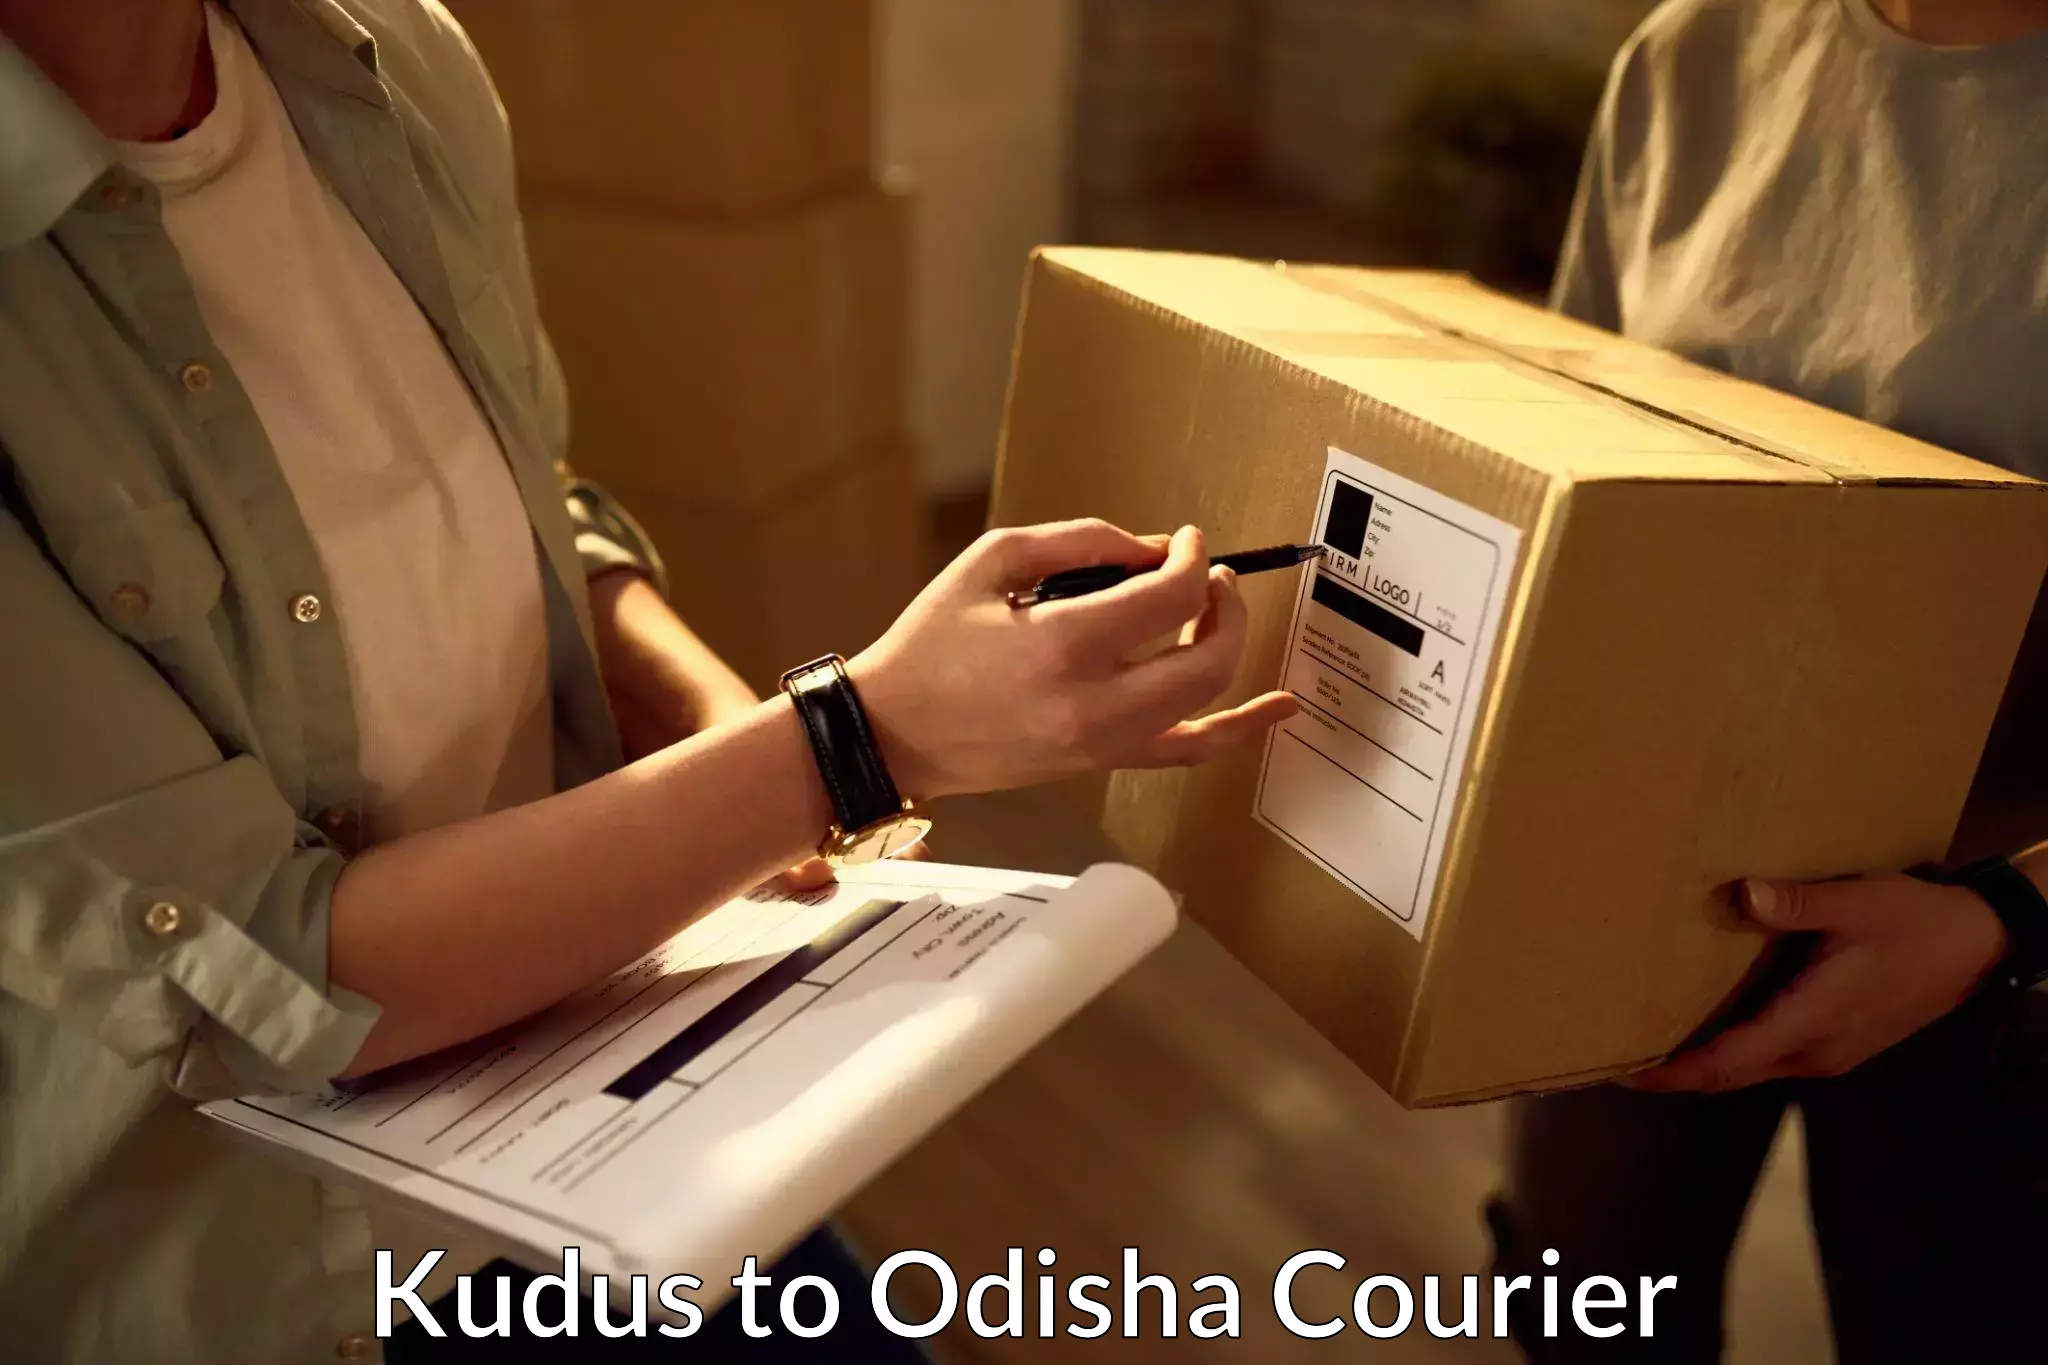 Efficient logistics management Kudus to Odisha